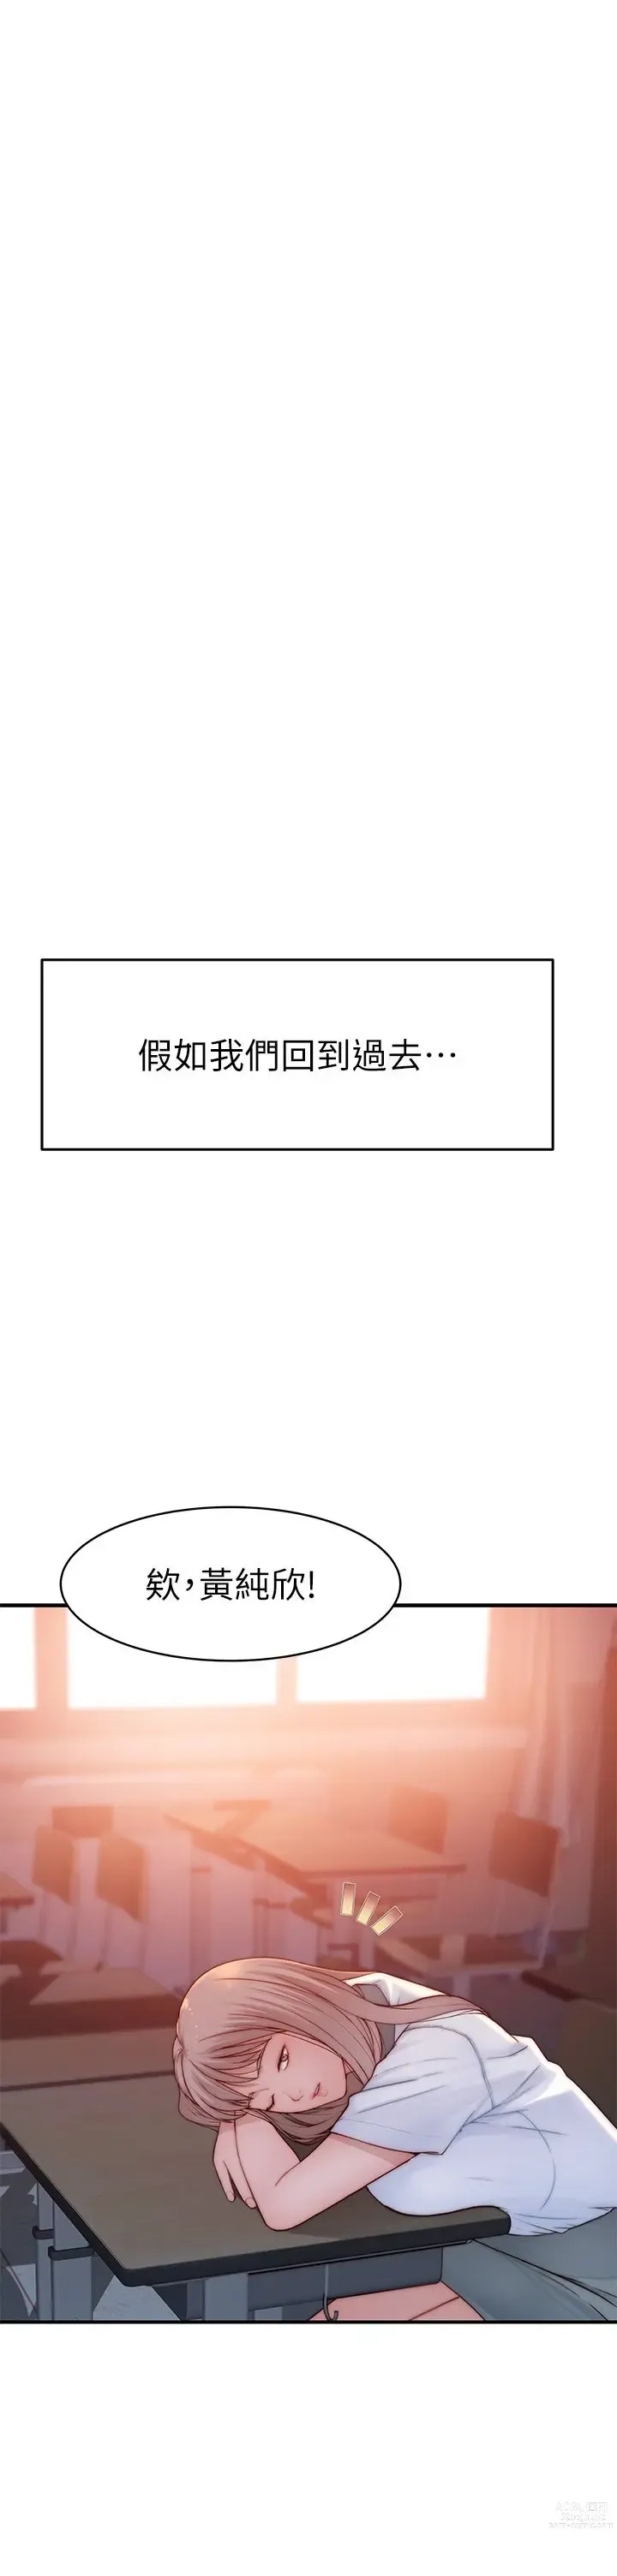 Page 1889 of manga 我们的特殊关系／Between Us [中文] [已完结]（下）